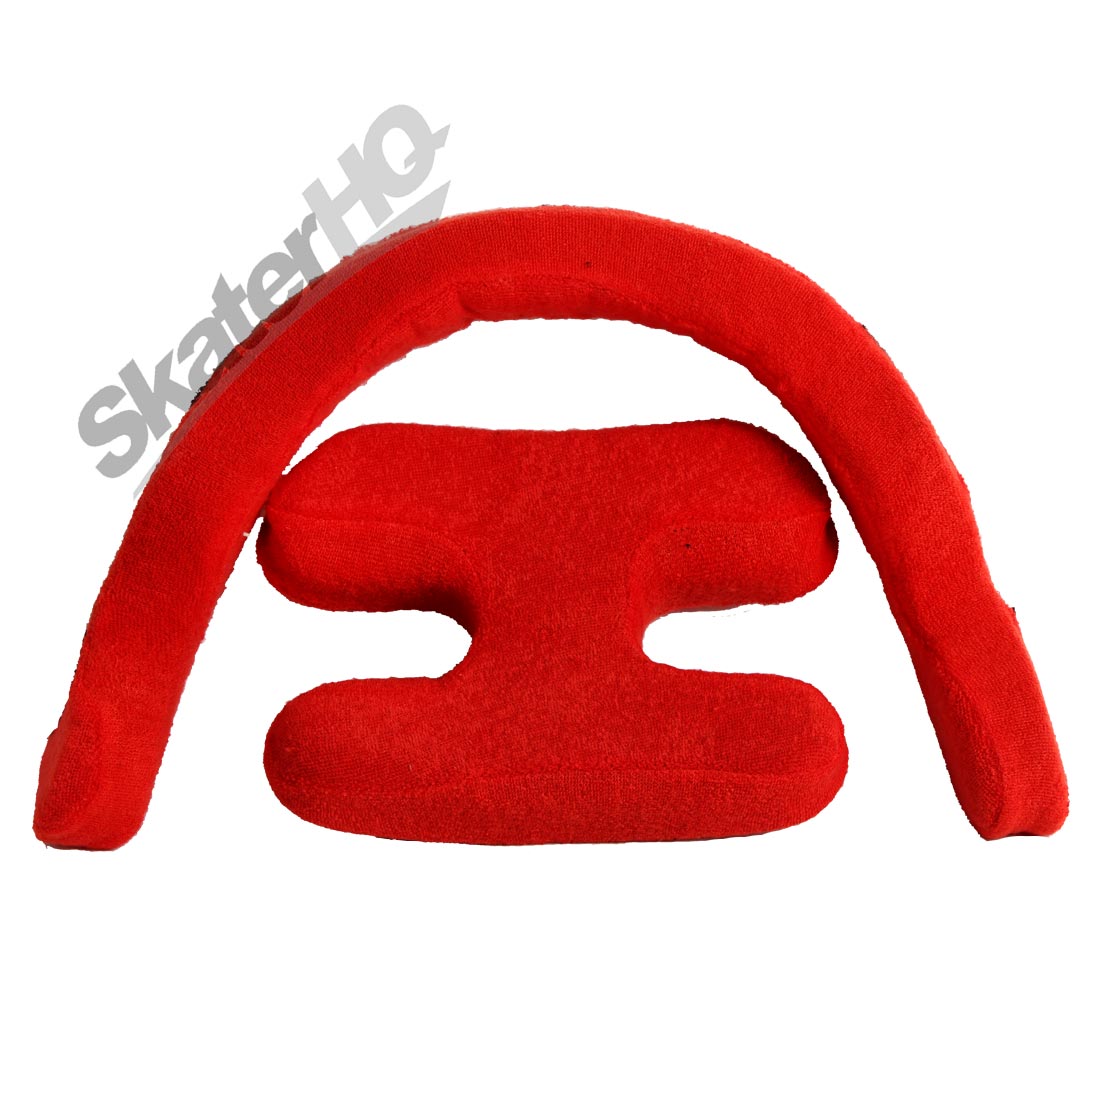 Triple 8 Sweatsaver Liner - Red - M Helmet liners